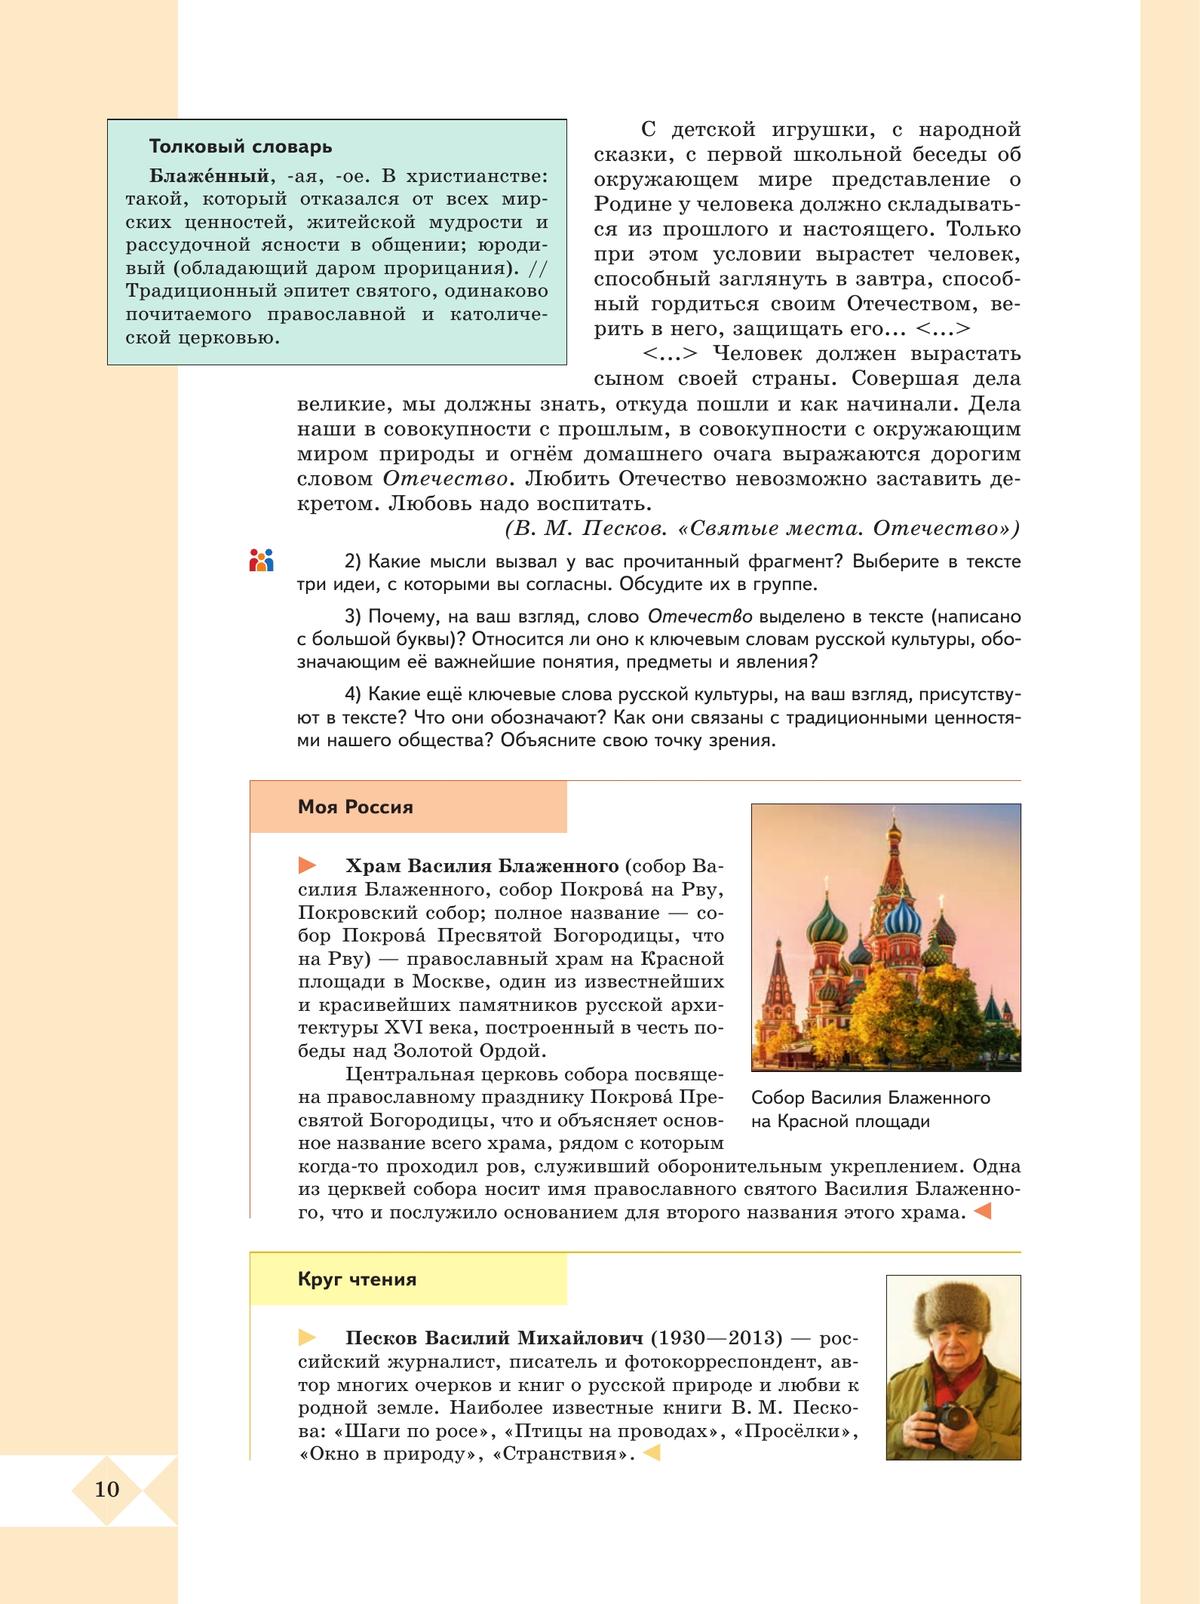 Русский родной язык. 10-11 классы. Базовый уровень. Учебное пособие 7